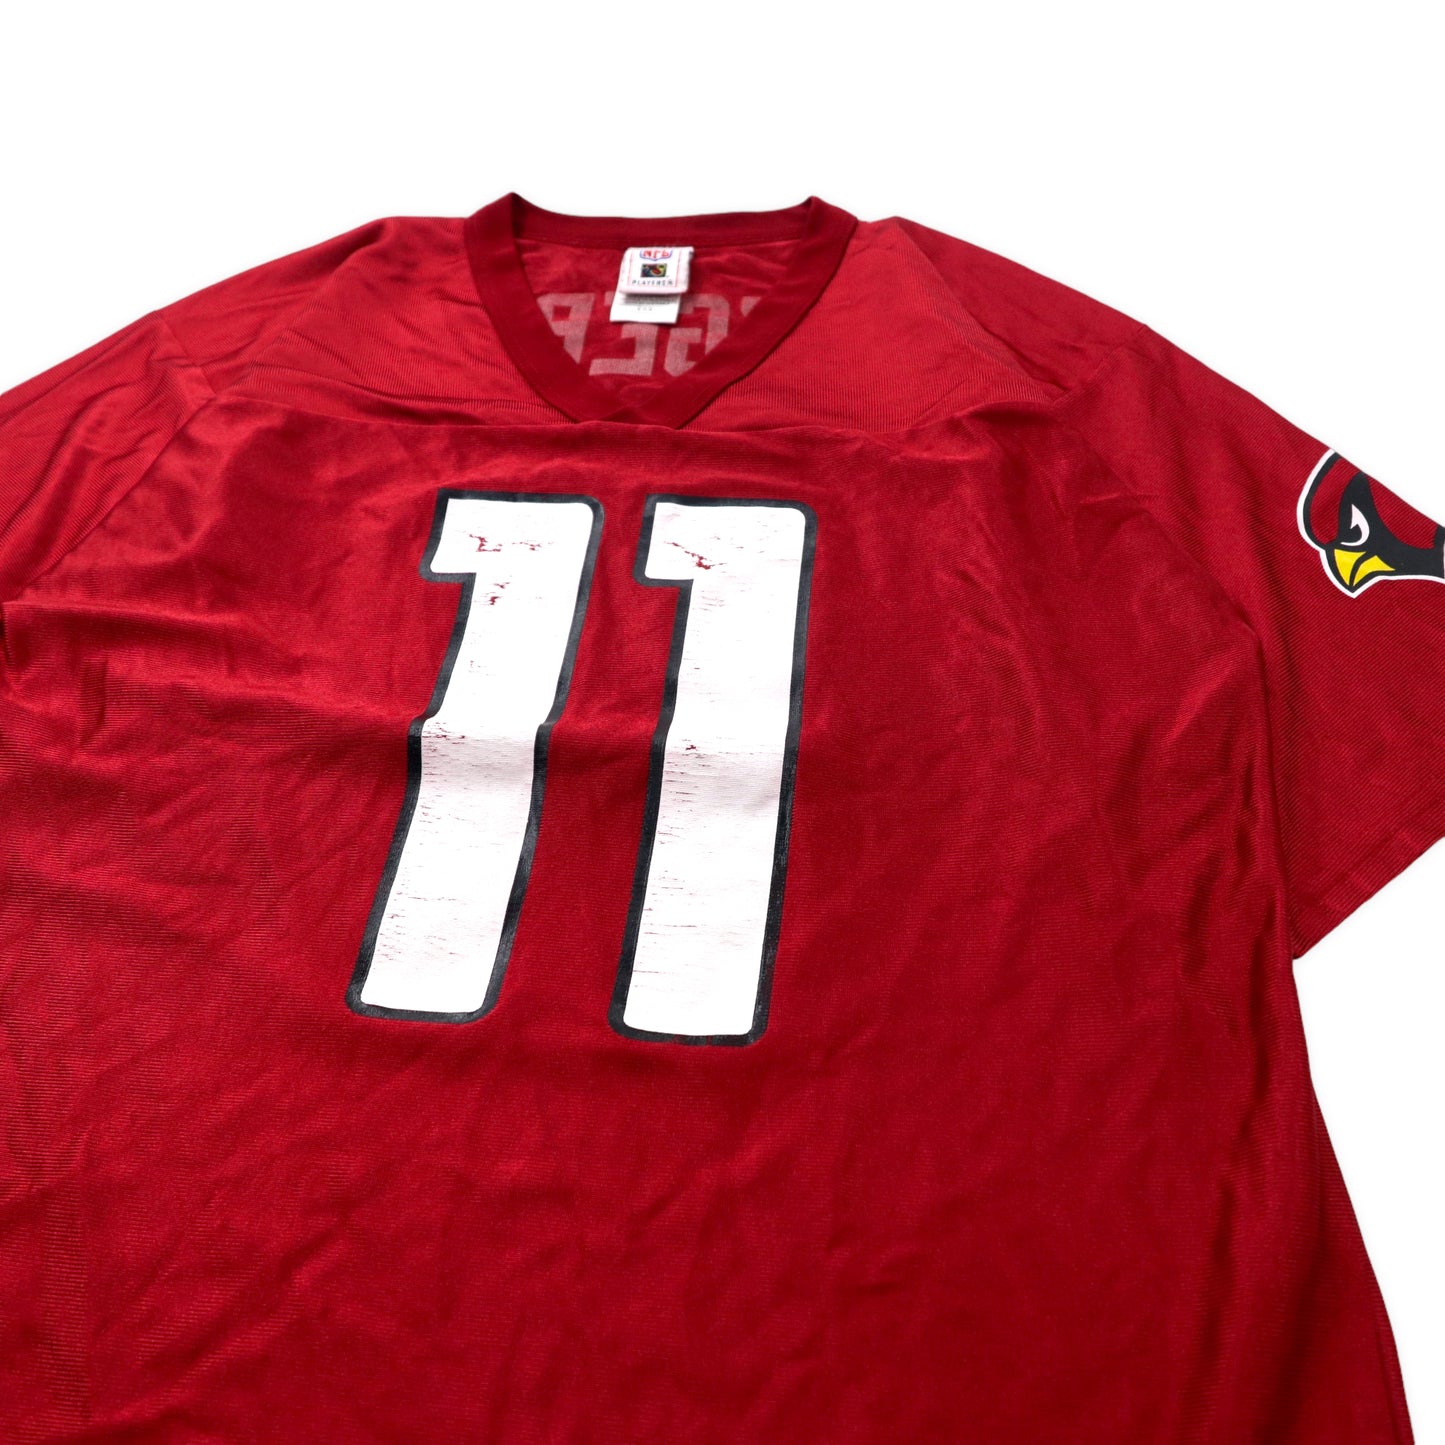 NFL PLAYERS ゲームシャツ M レッド ポリエステル Arizona Cardinals ナンバリング FITZGERALD